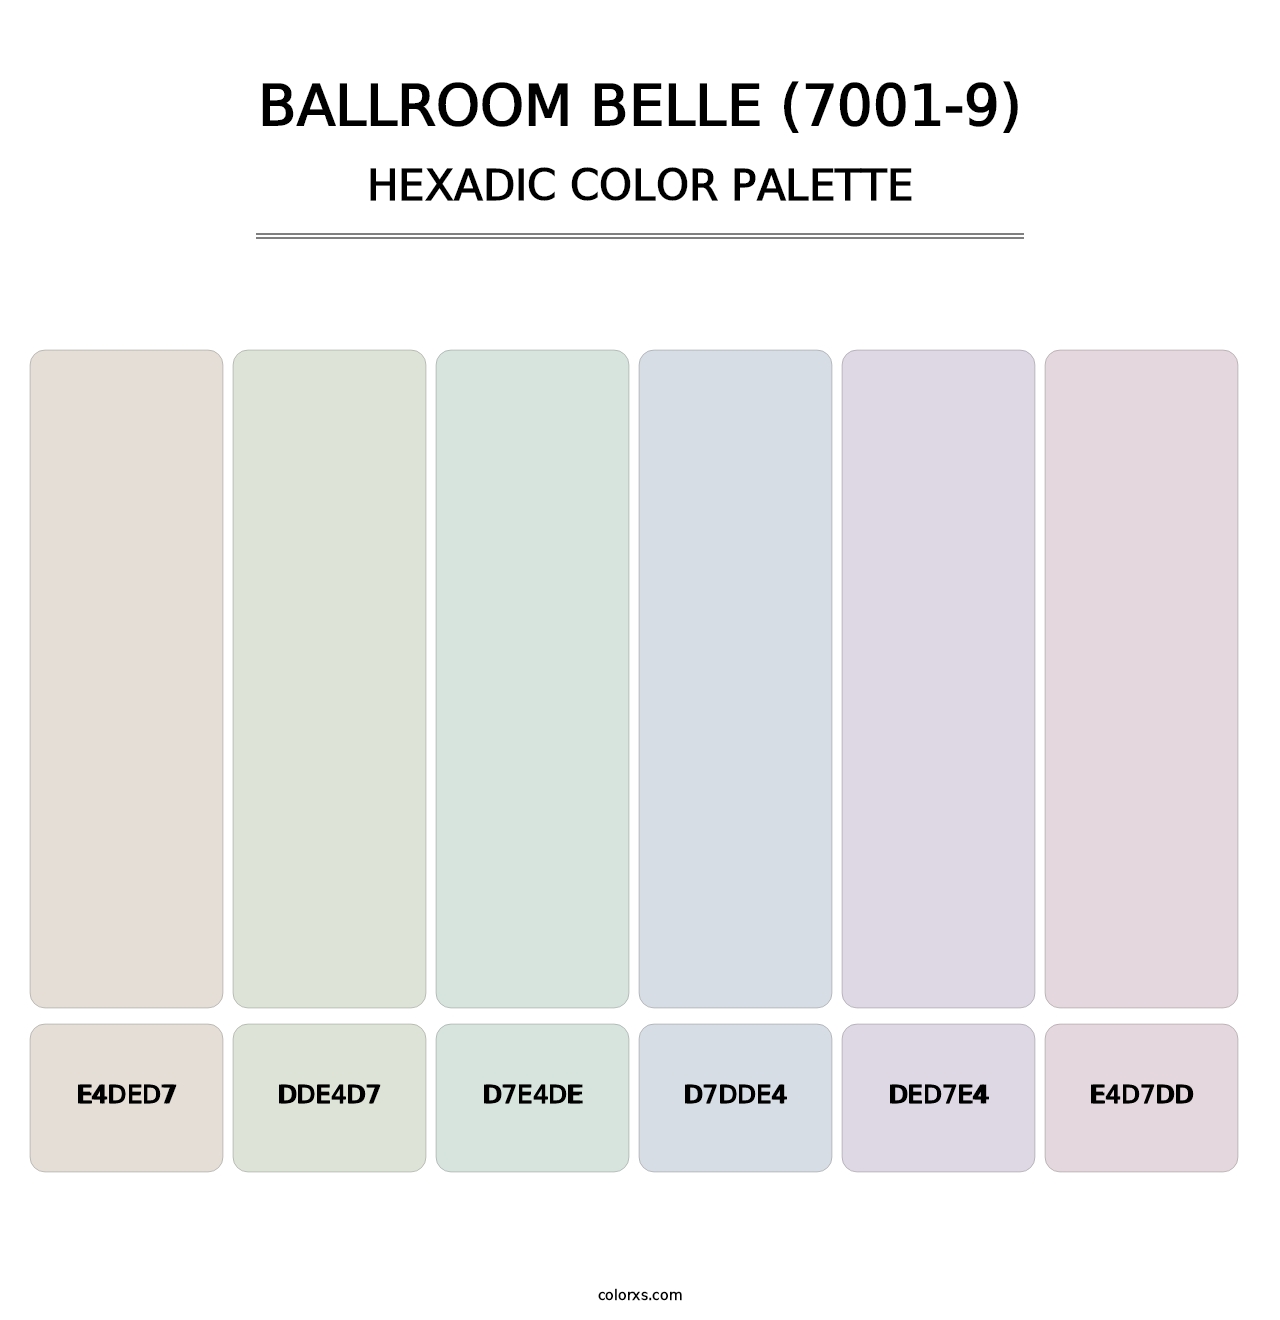 Ballroom Belle (7001-9) - Hexadic Color Palette